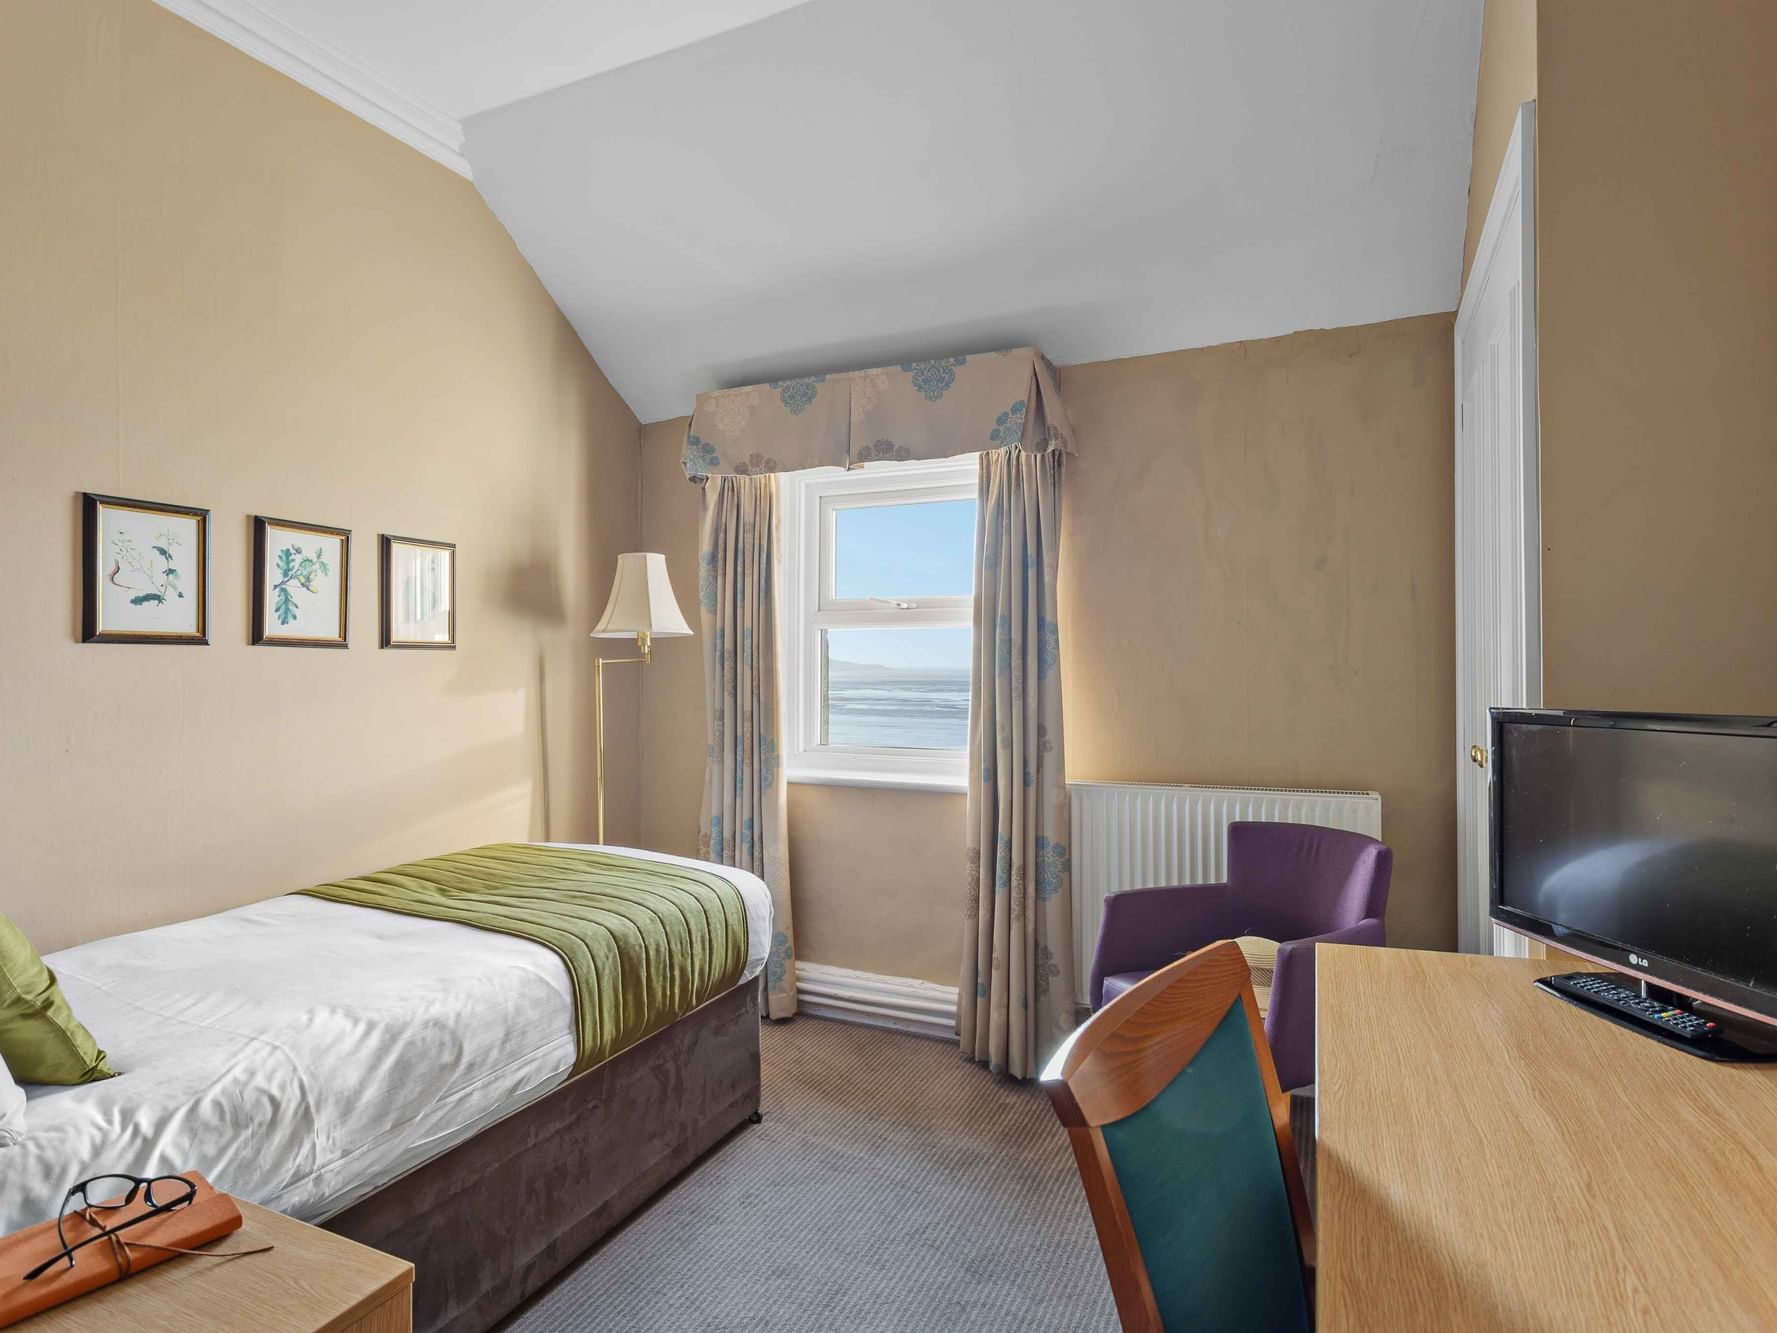 Sea View Single Room at The Grand Atlantic Hotel in Weston-super-Mare